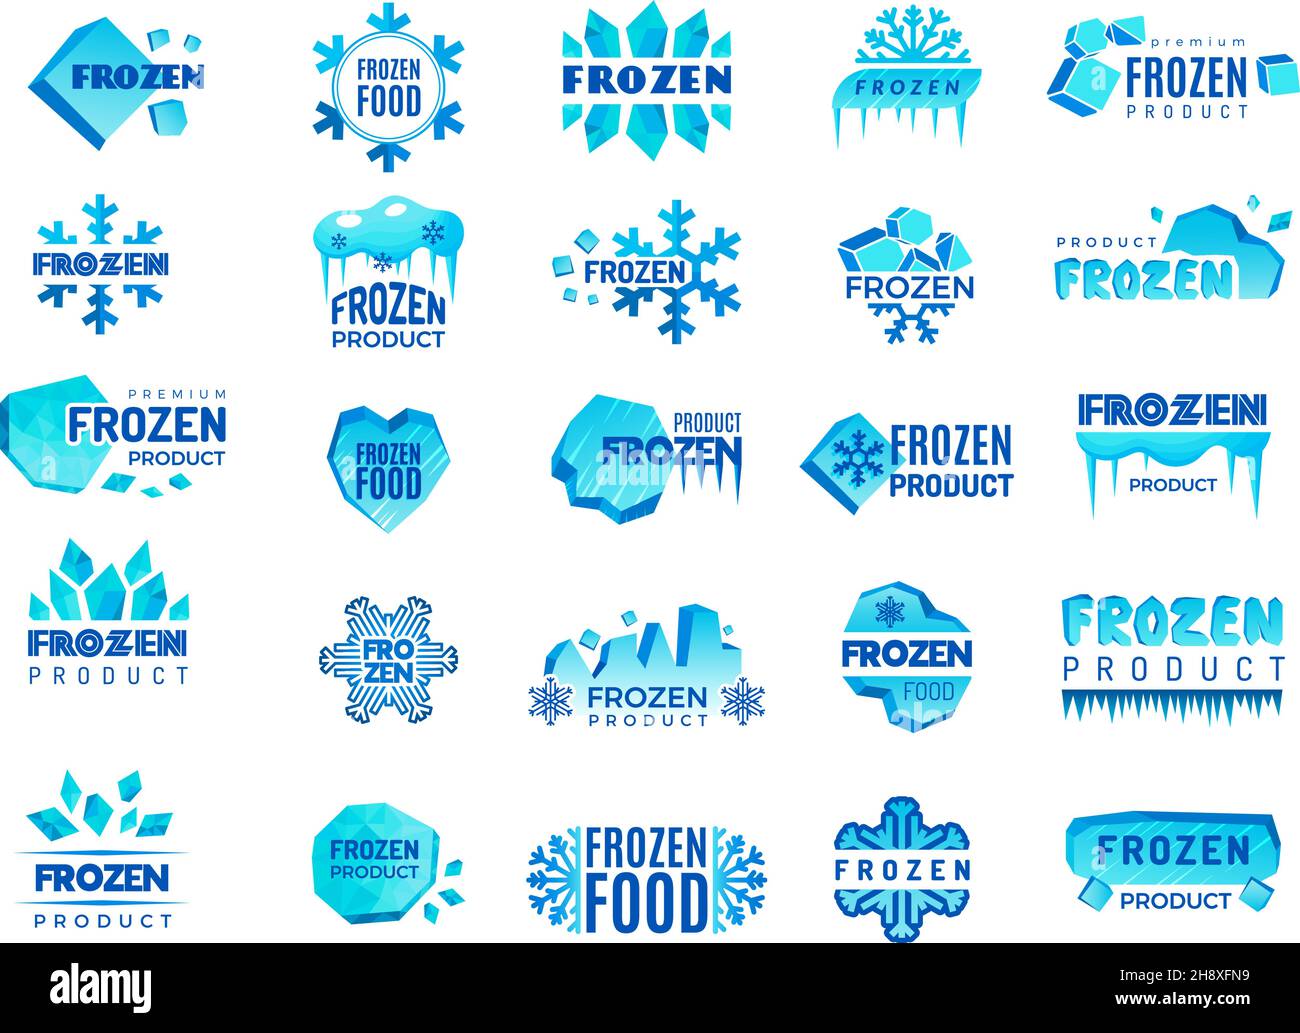 Logo del prodotto congelato. Neve e fiocchi di neve d'inverno da ghiaccio simboli stilizzati per logo design freddo cibo temperature recenti vettoriali modelli collezione Illustrazione Vettoriale